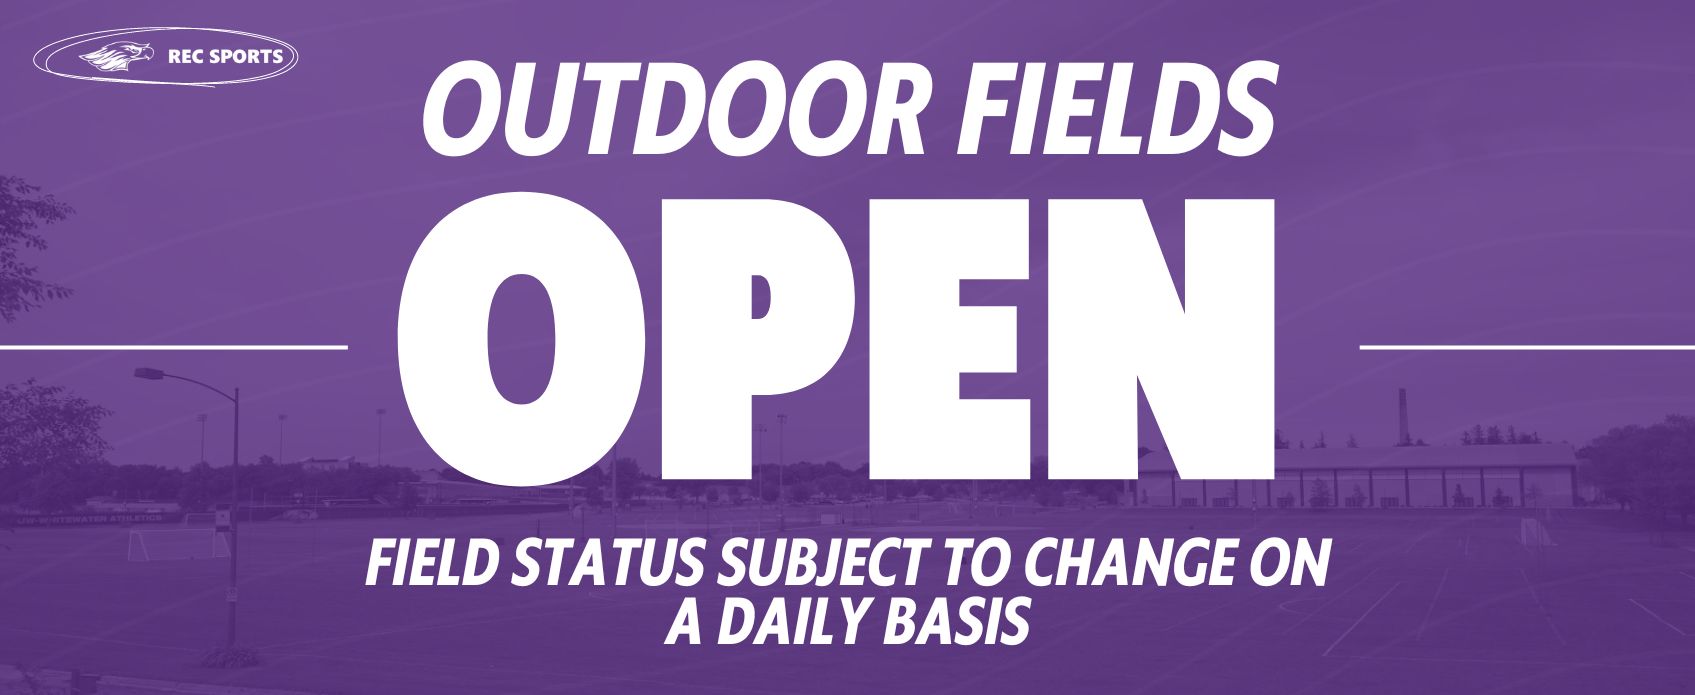 Outdoor Field Status